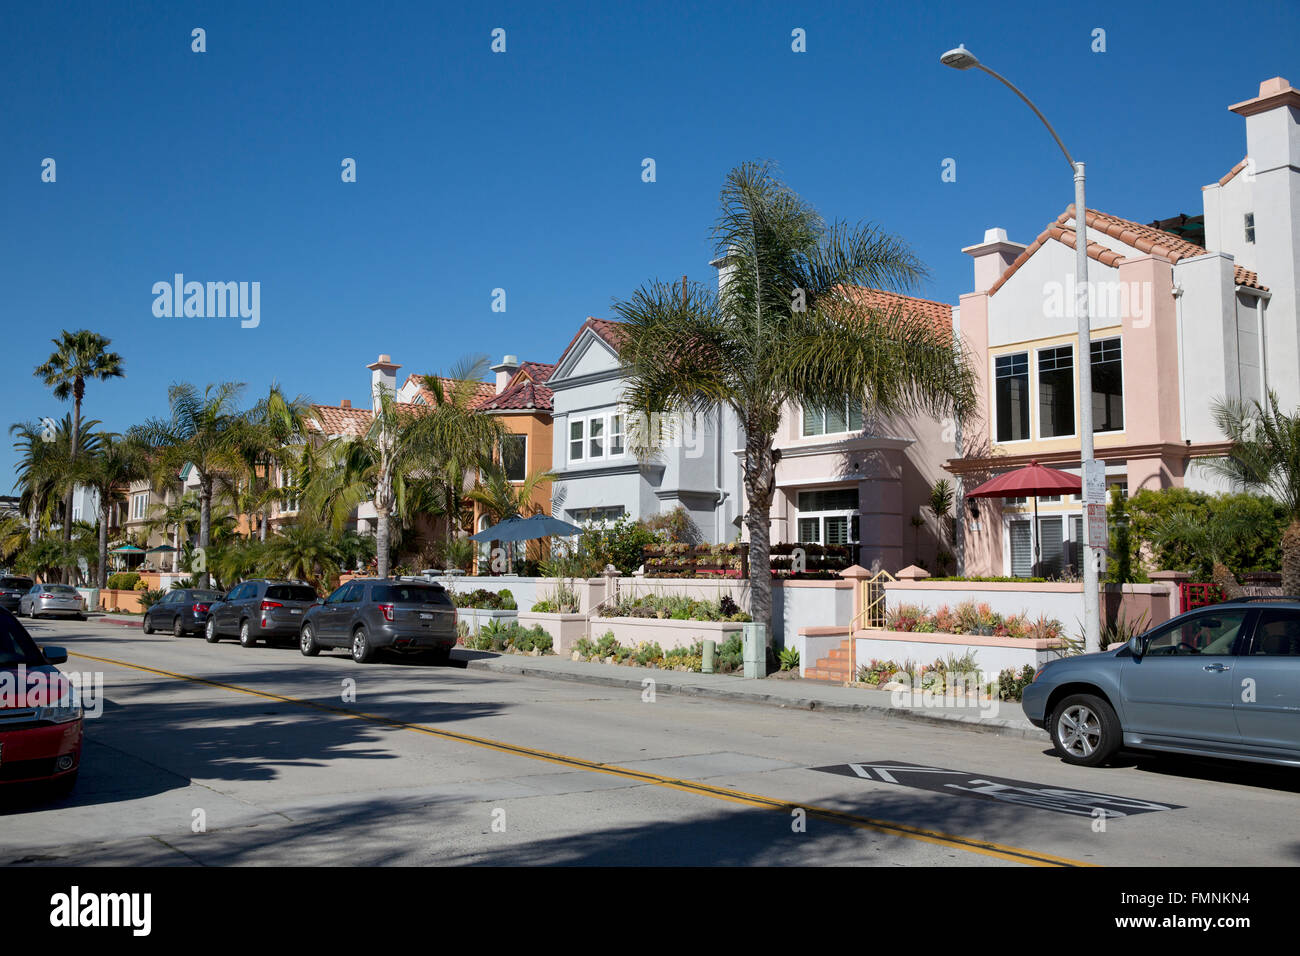 Residential street, Oceanside, California, USA Stock Photo